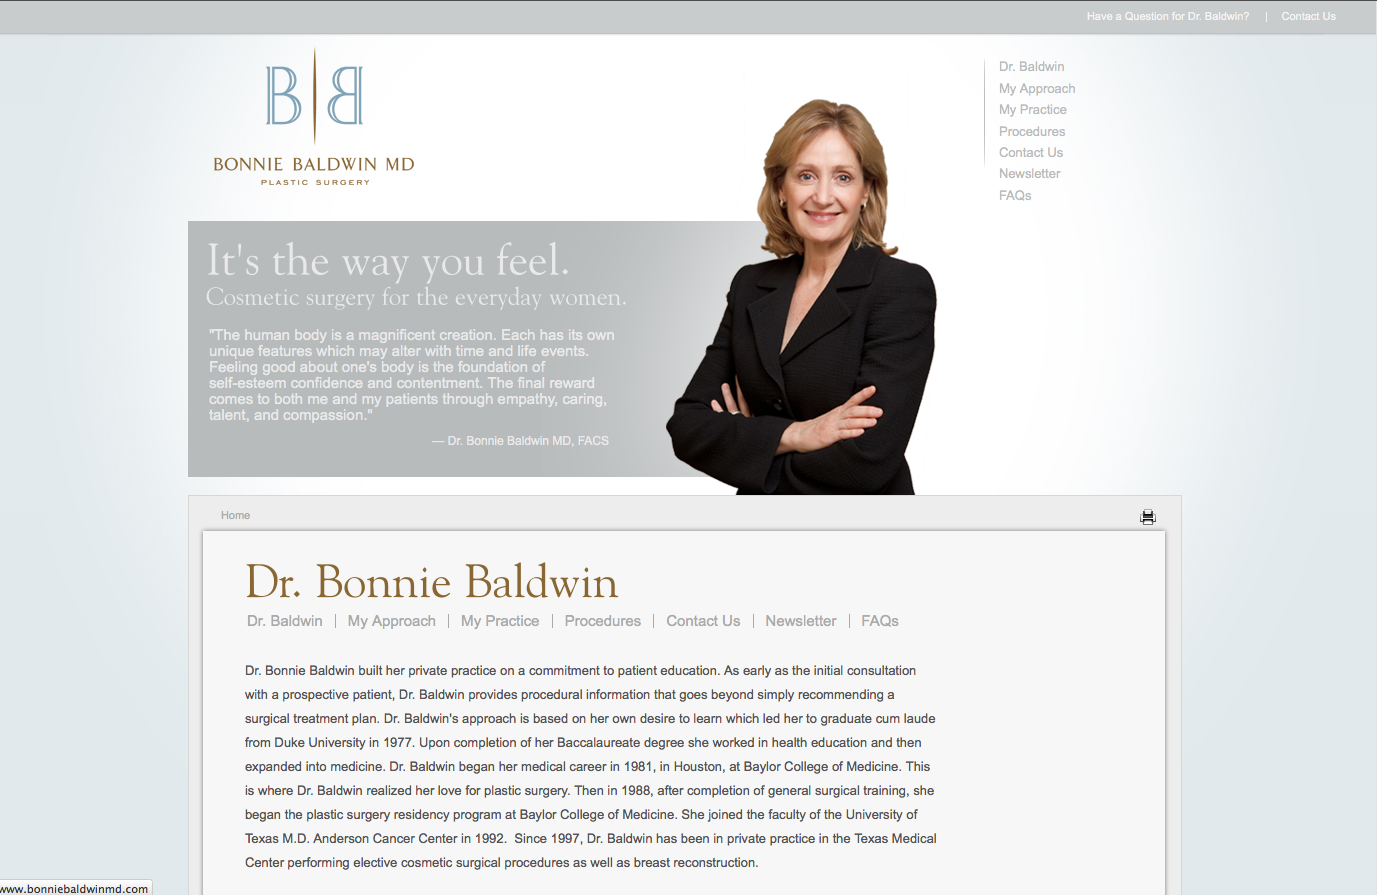 Dr. Bonnie Baldwin